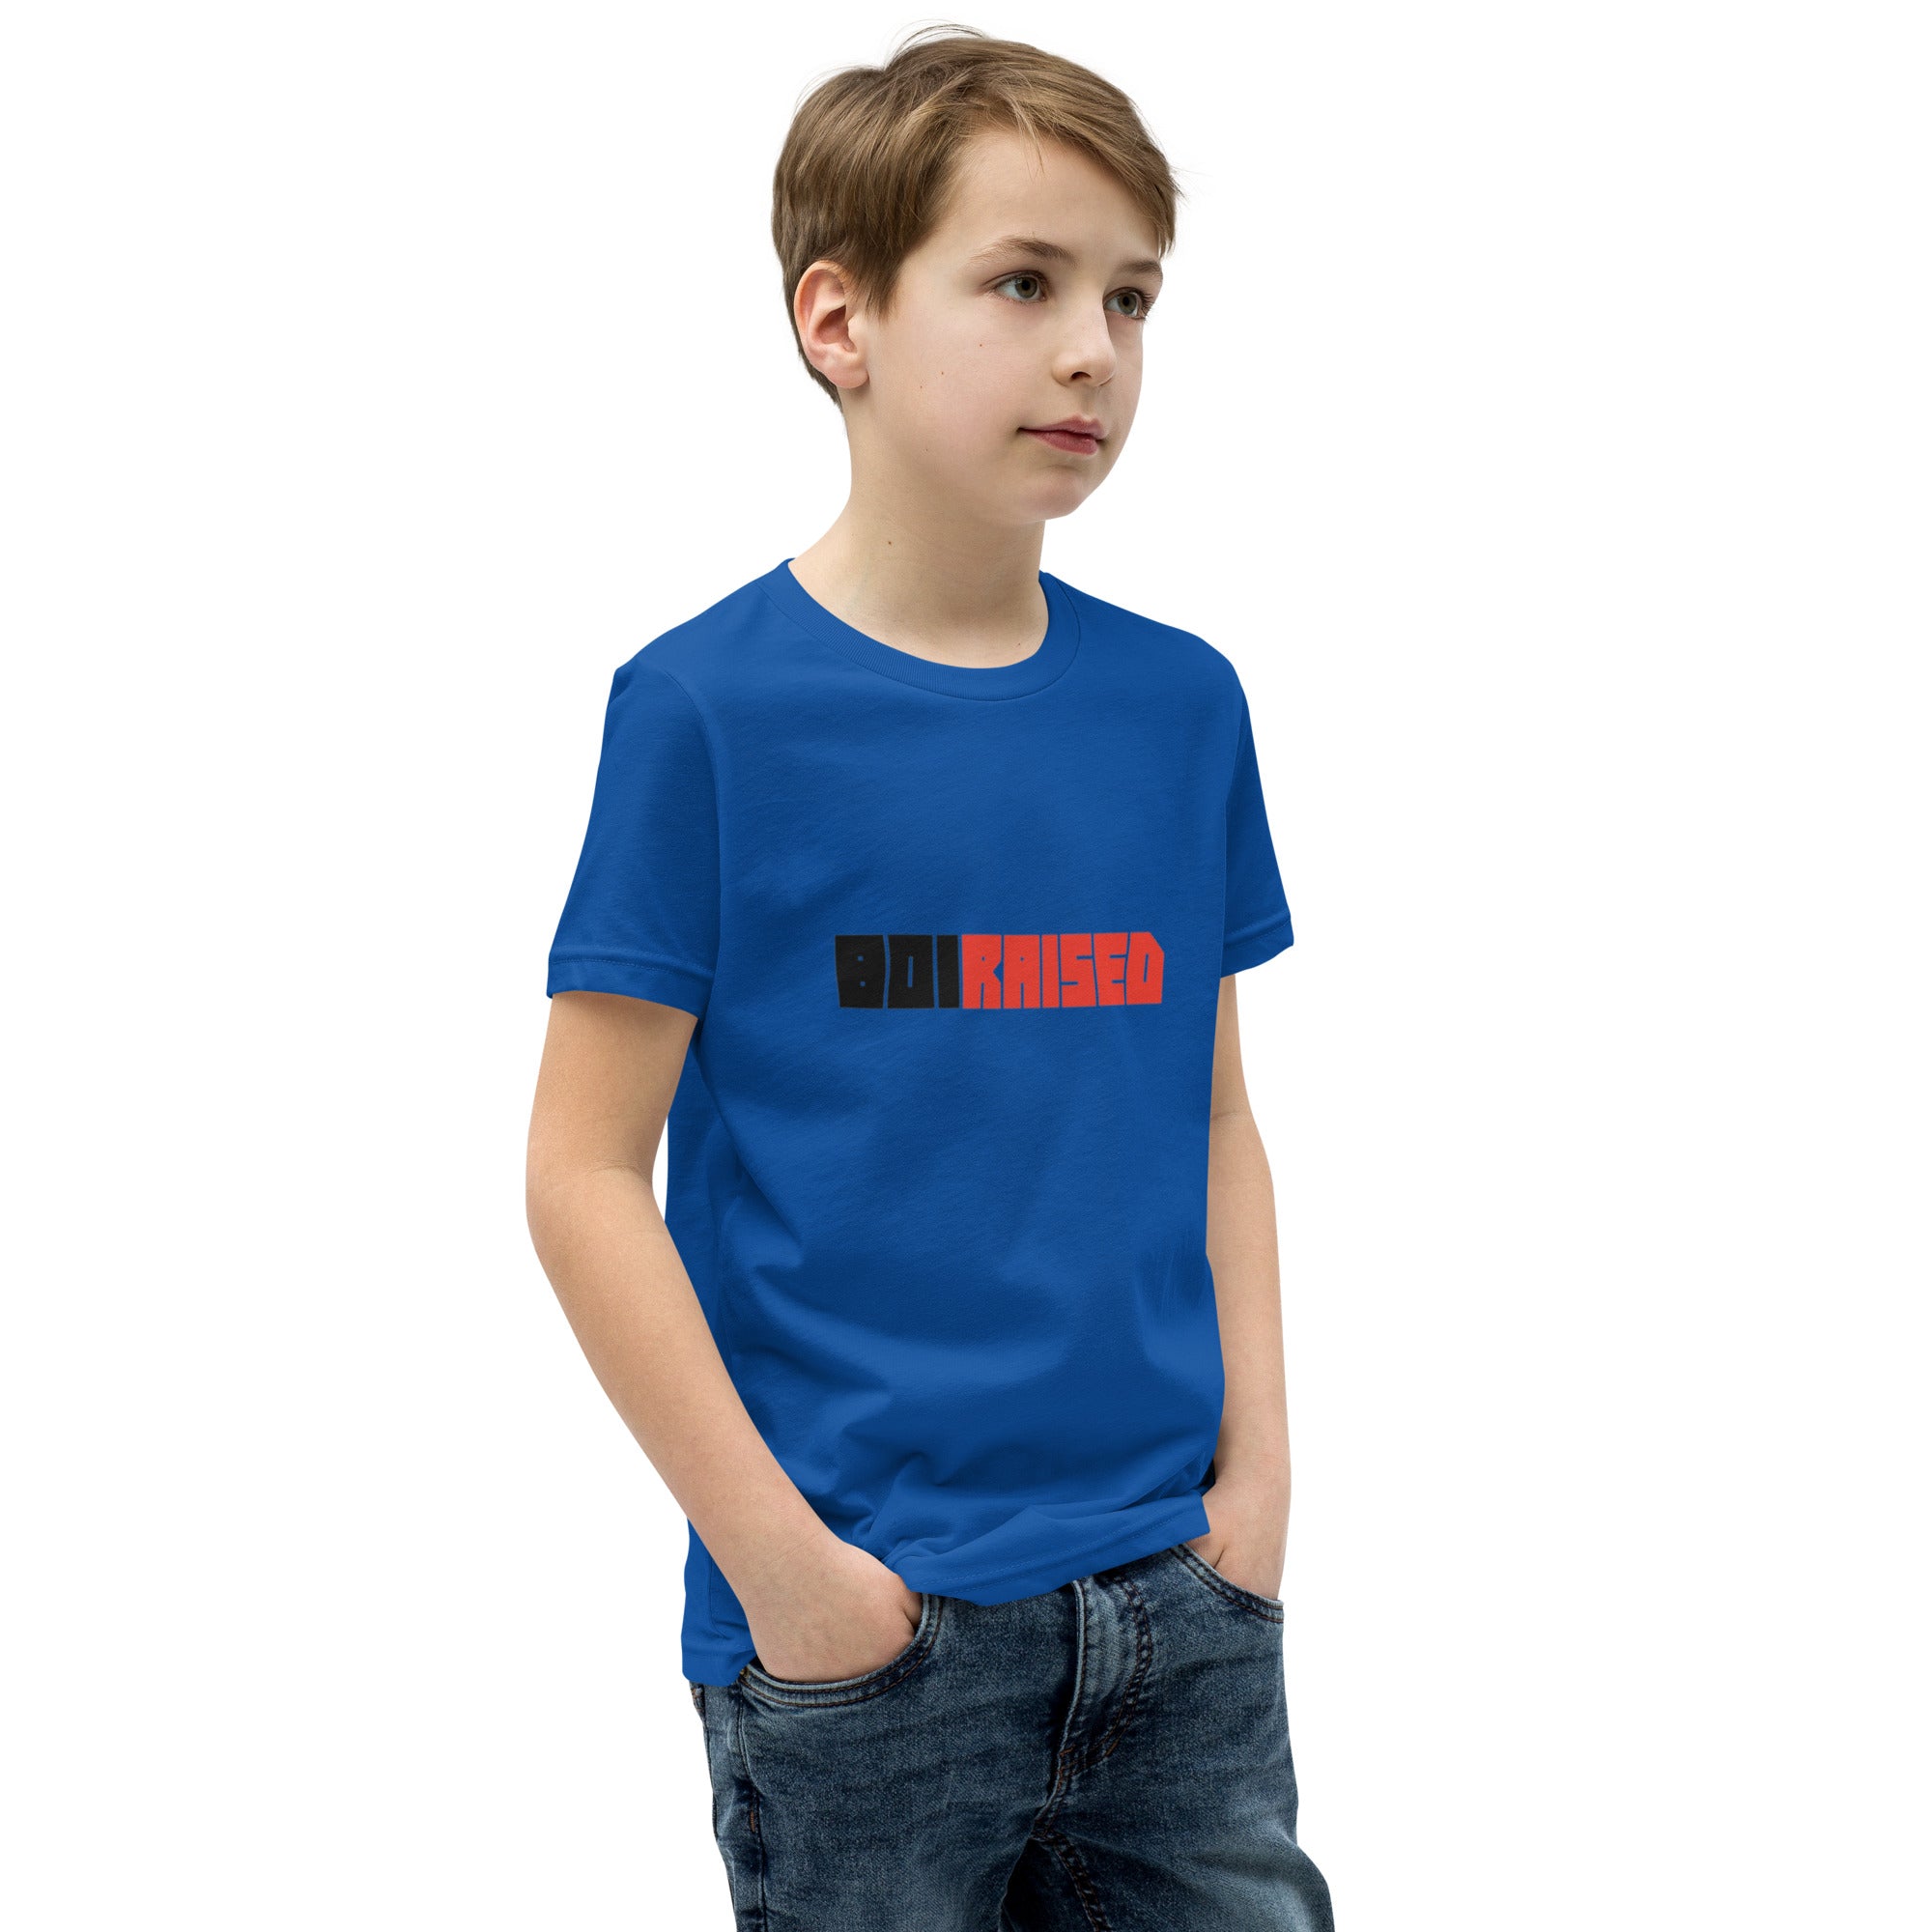 Kids Short Sleeve LOGO T-Shirt - 801raised